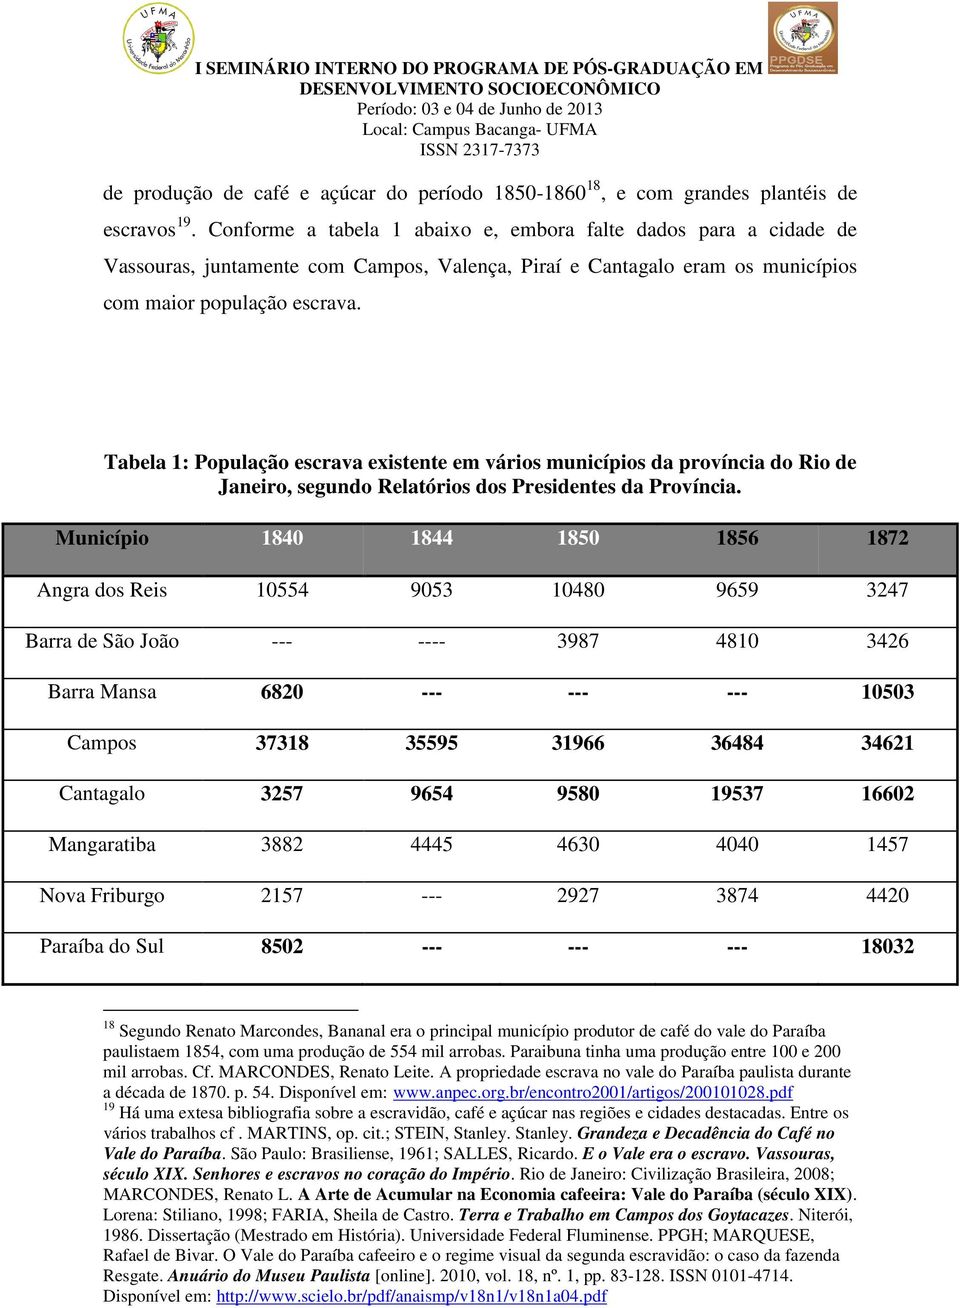 Tabela 1: População escrava existente em vários municípios da província do Rio de Janeiro, segundo Relatórios dos Presidentes da Província.